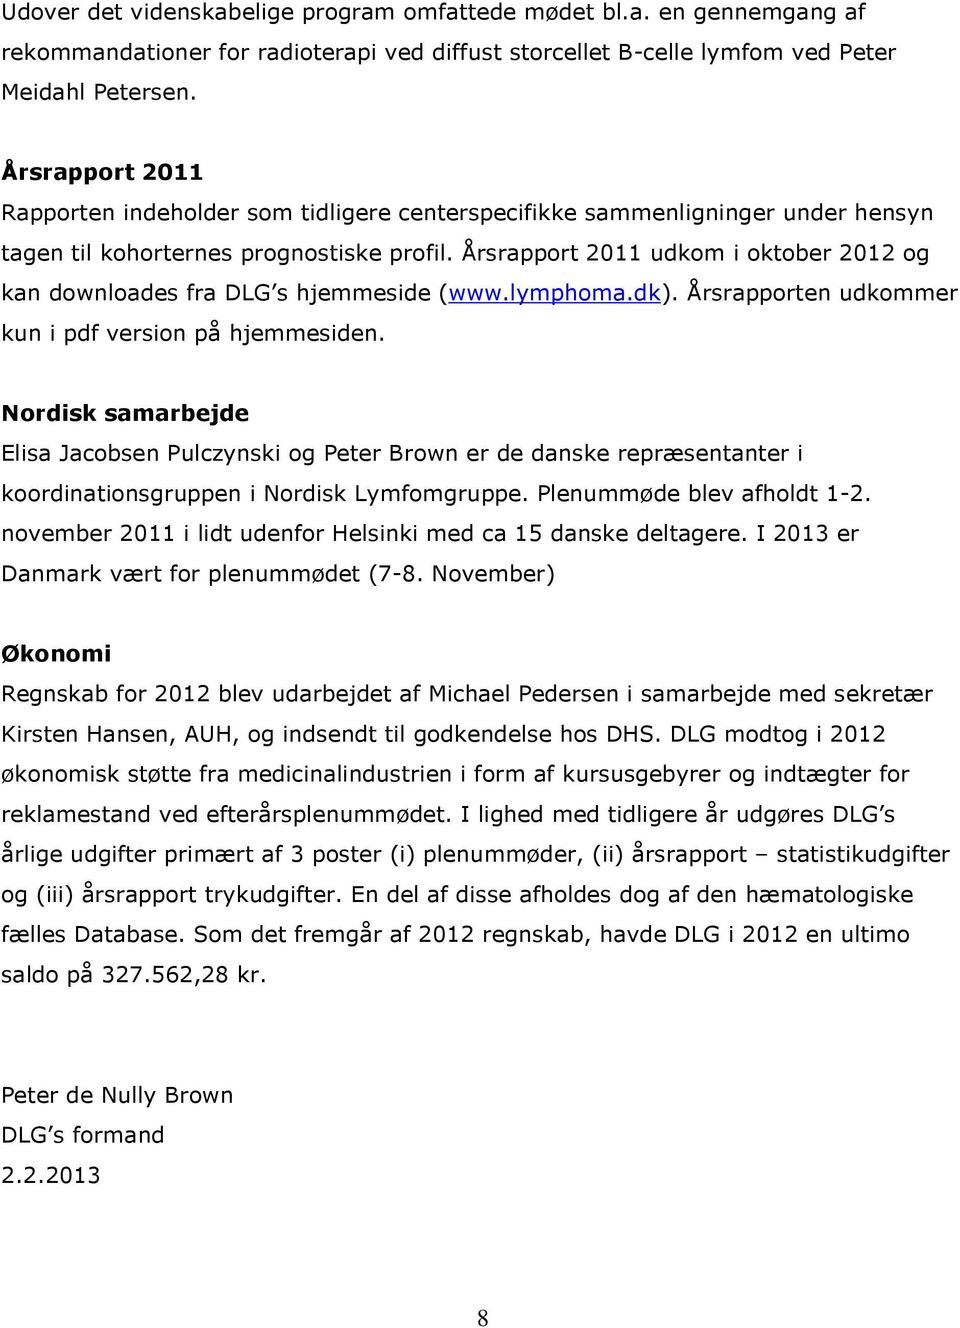 Årsrapport 2011 udkom i oktober 2012 og kan downloades fra DLG s hjemmeside (www.lymphoma.dk). Årsrapporten udkommer kun i pdf version på hjemmesiden.